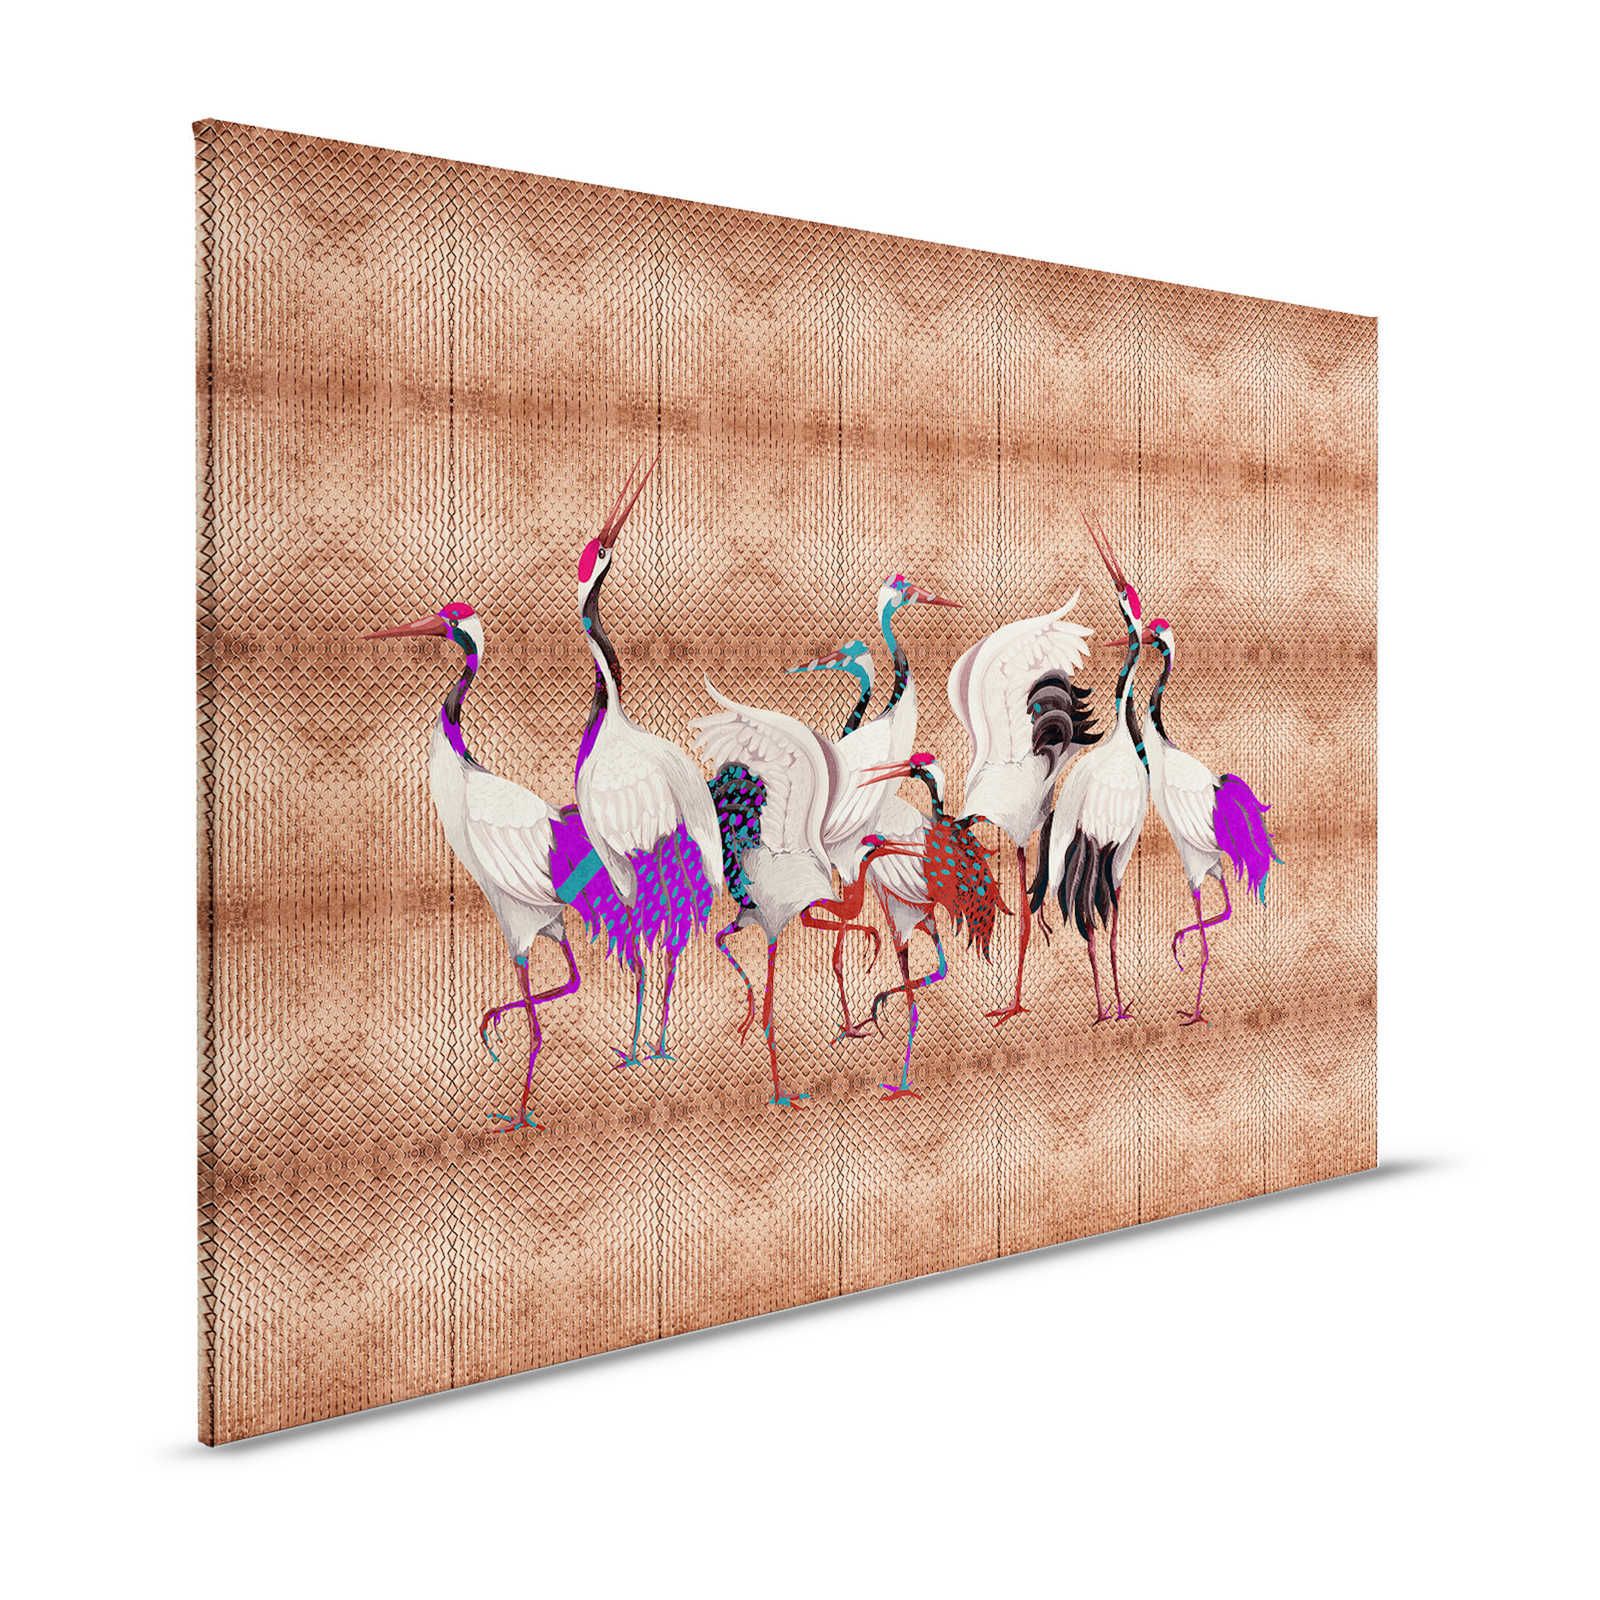 Land van Geluk 2 - Metallic canvasprint koper met kleurrijk kraanvogelmotief - 1.20 m x 0.80 m
